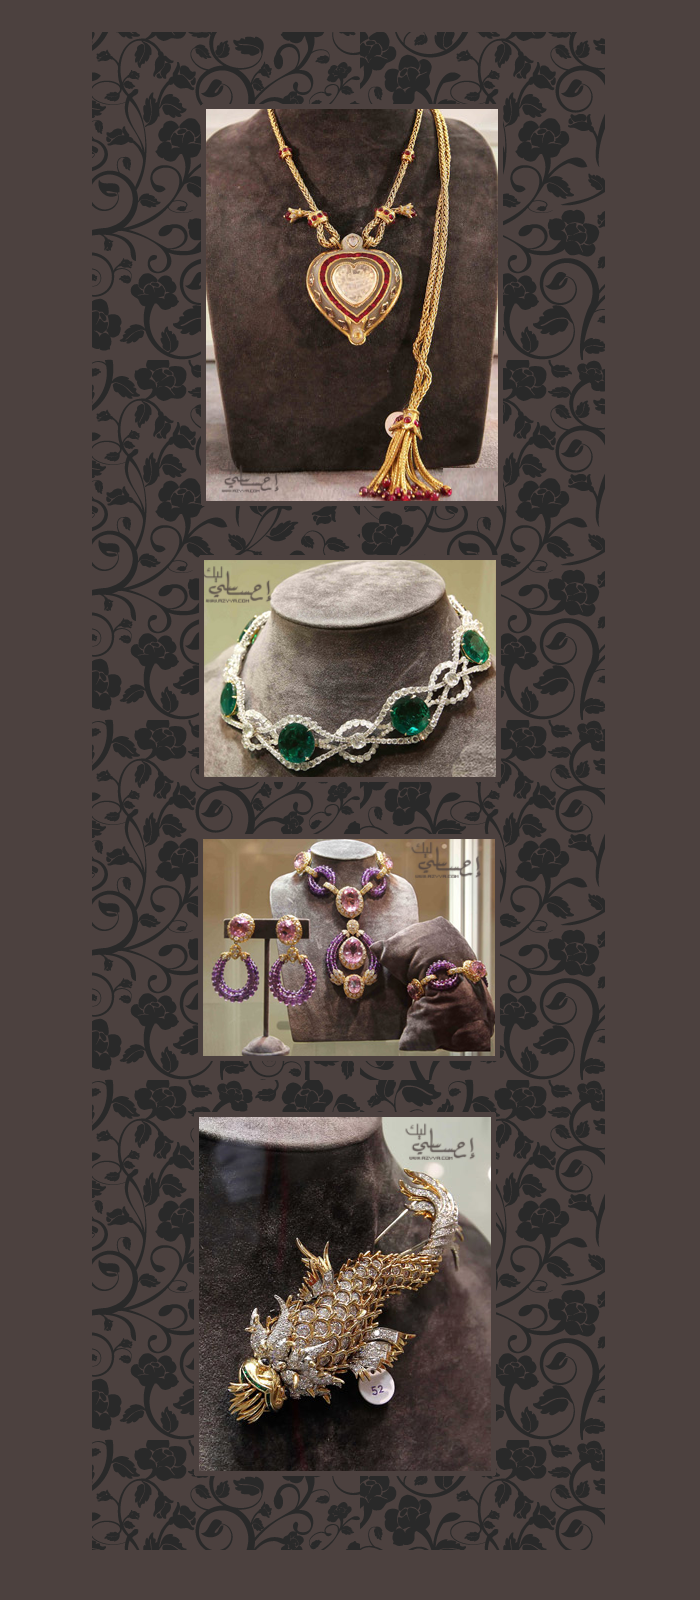 جورجيو أرماني 2012-2013باقات ورد للعروس من ذهب ومجوهراتأحذية لعروستنا الحلوةتاج